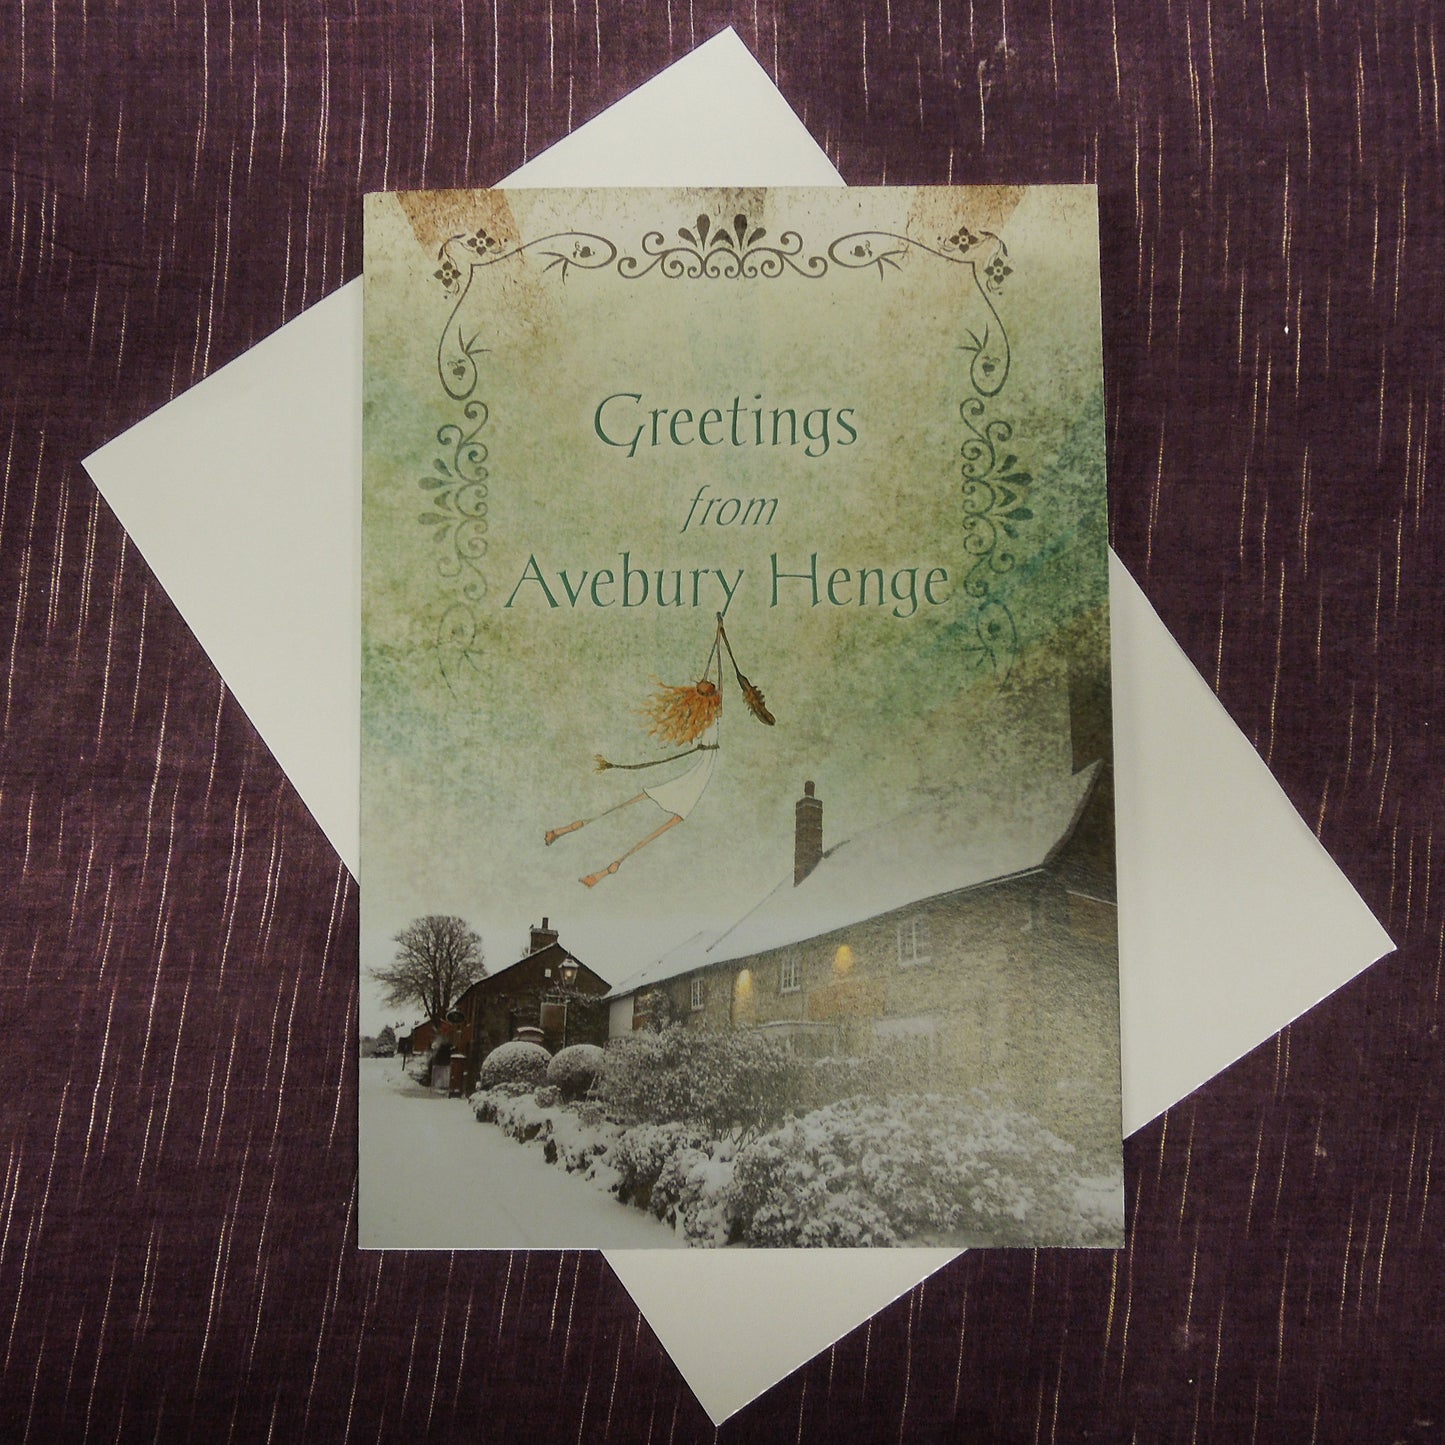 Greetings from Avebury Henge gift card